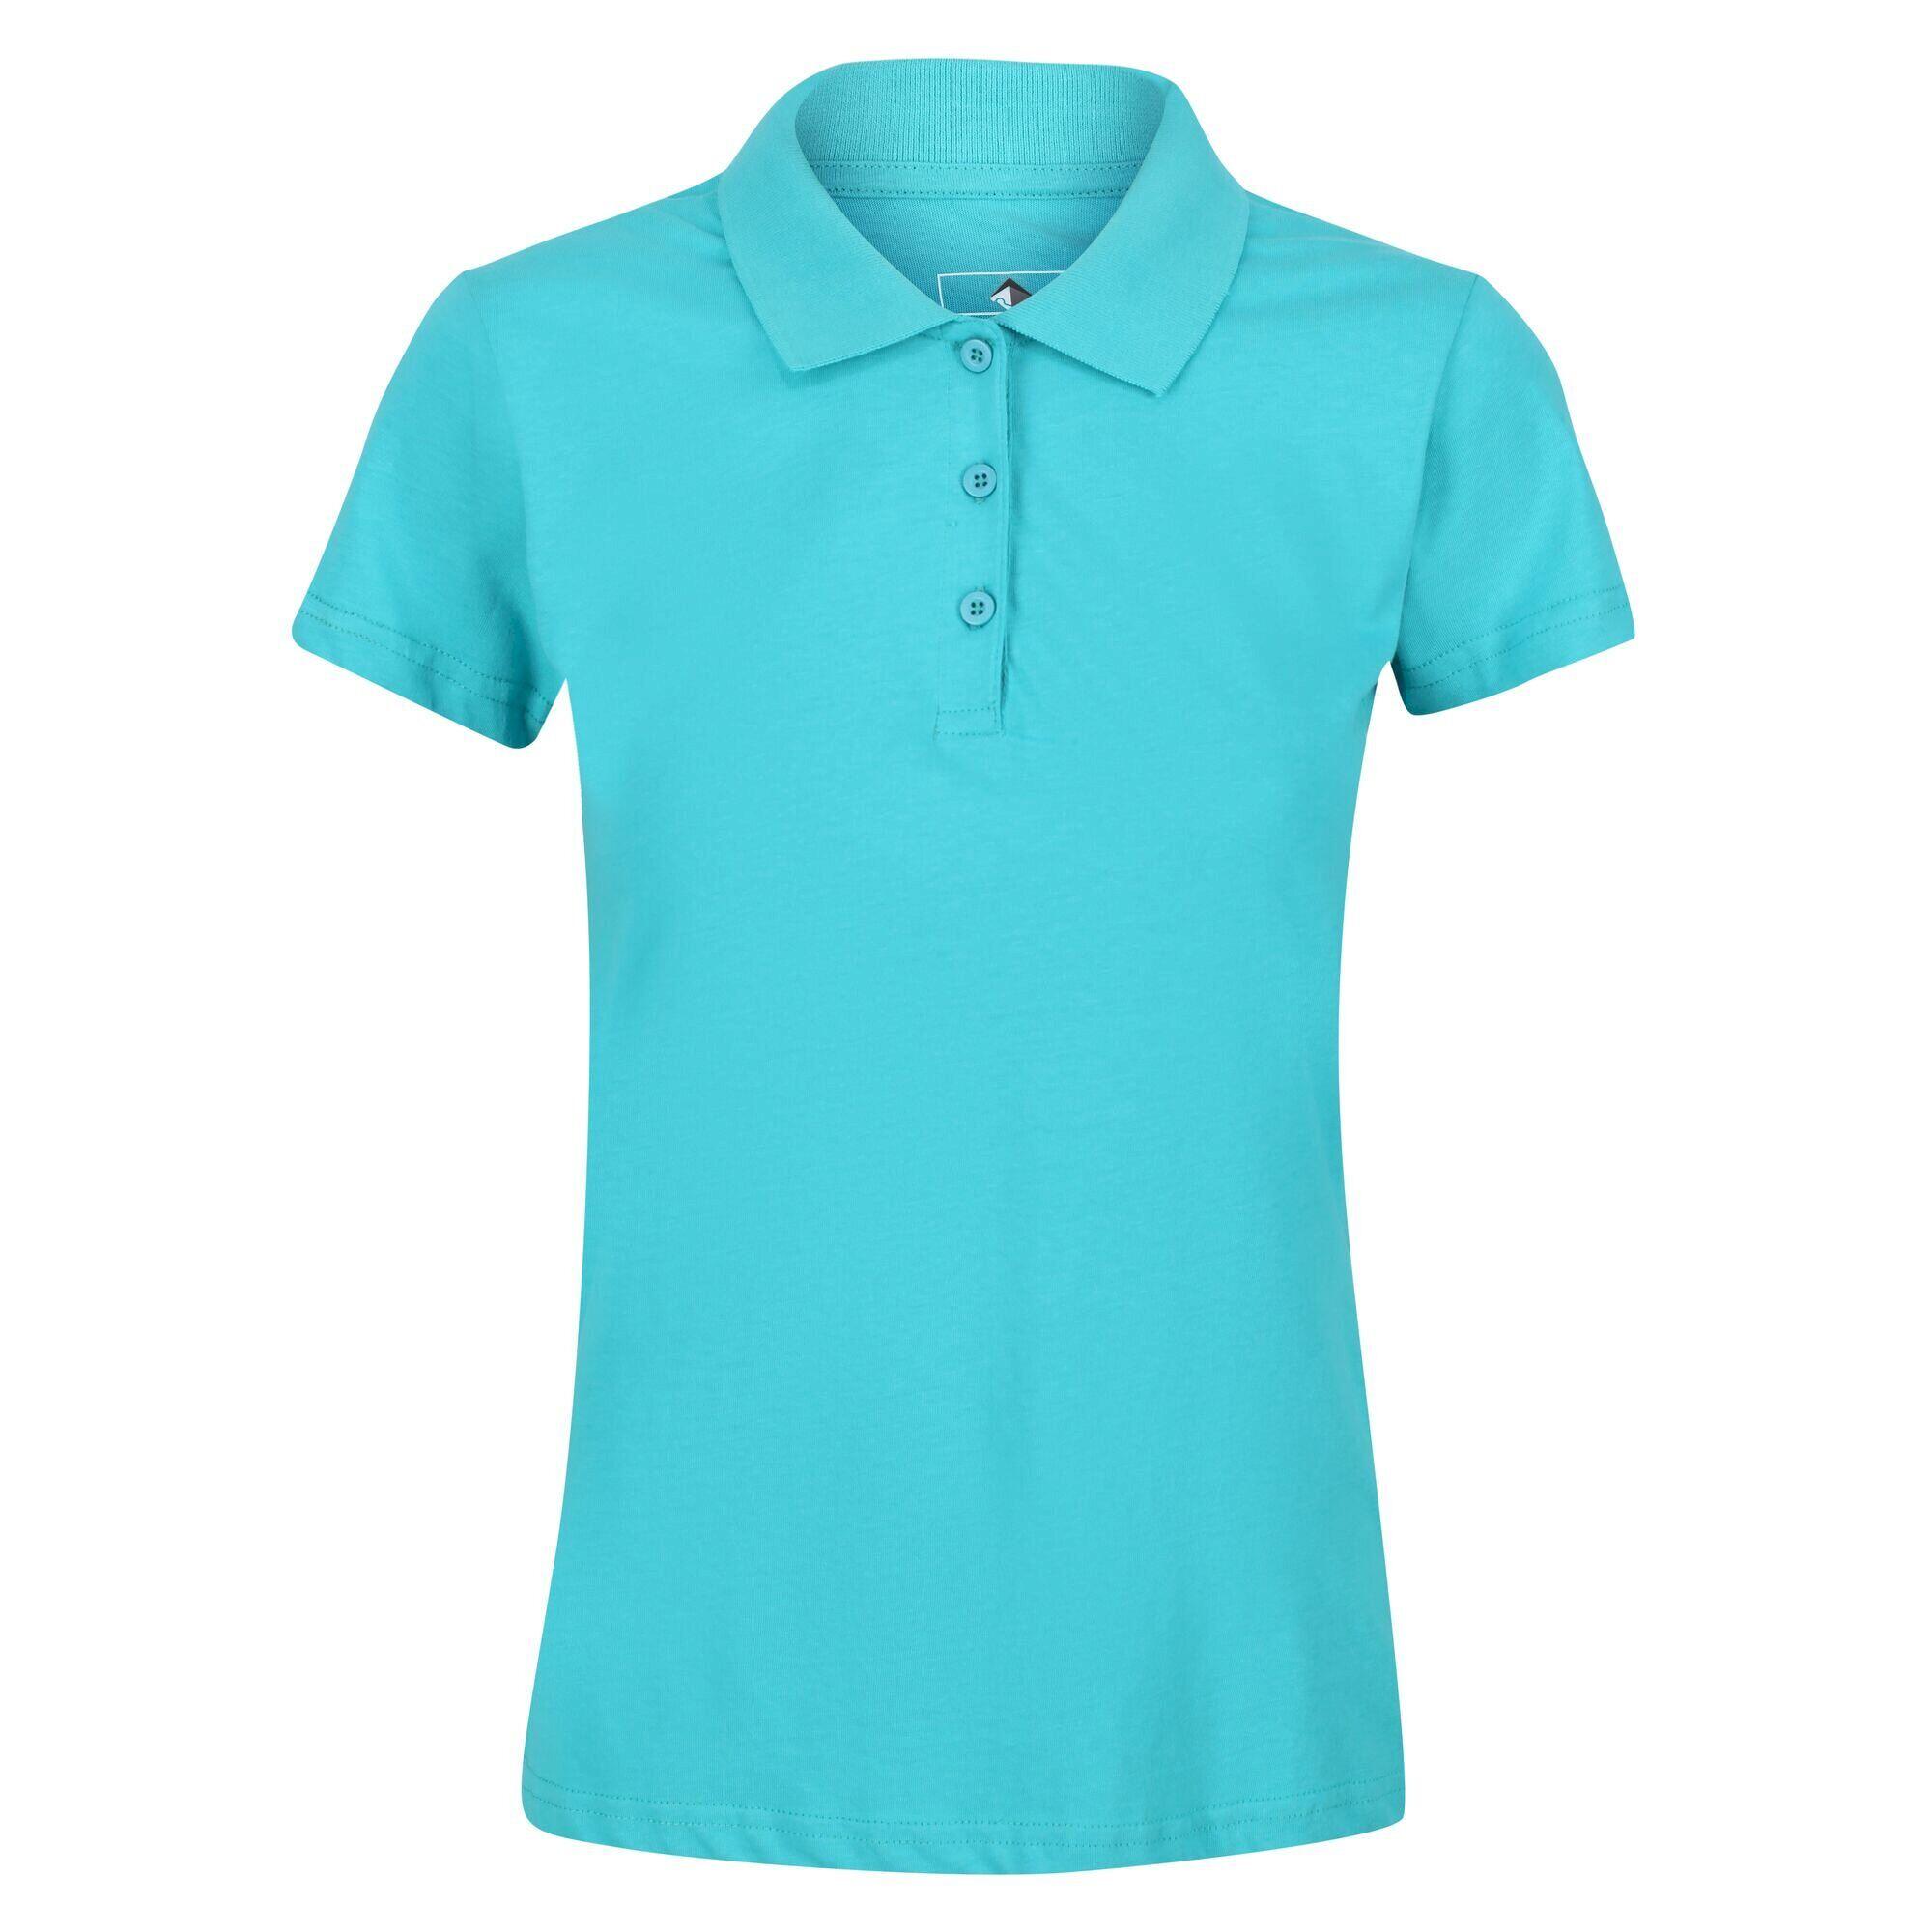 Womens/Ladies Sinton Polo Shirt (Turquoise) 1/5